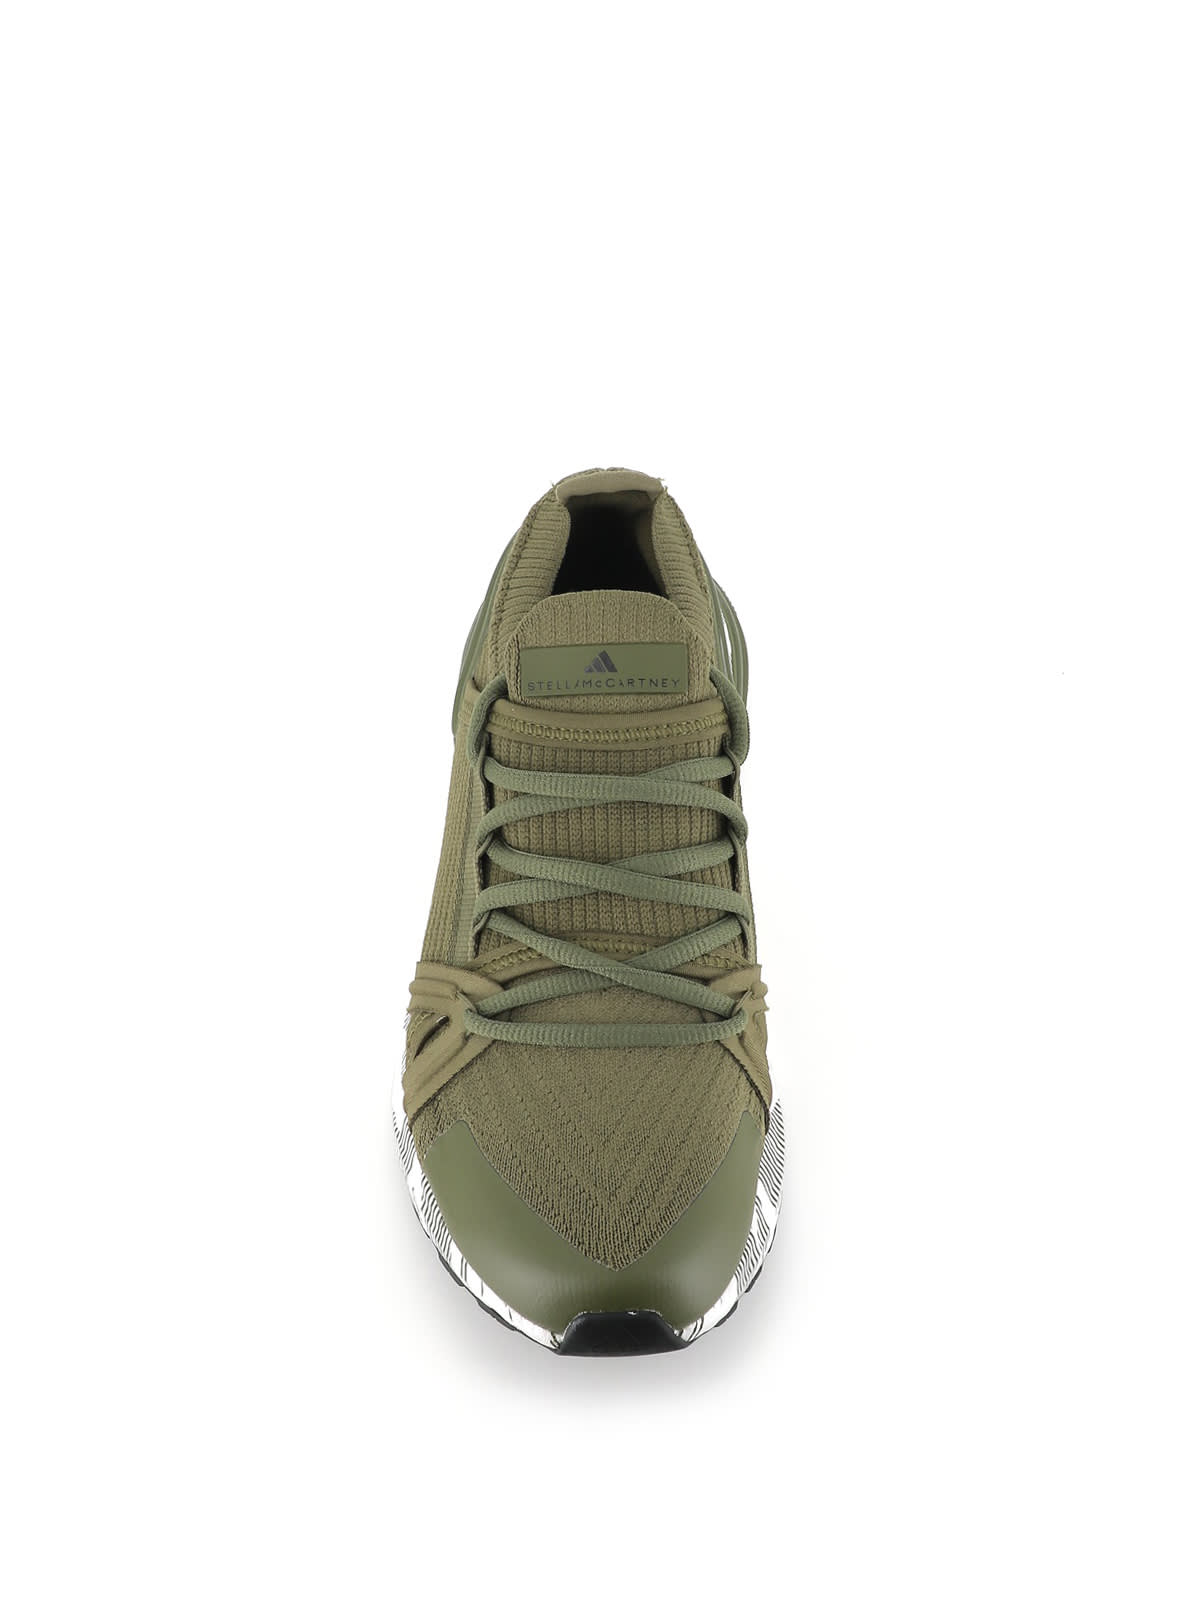 Shop Adidas By Stella Mccartney Sneakers Asmc Ultraboost 20 In Green